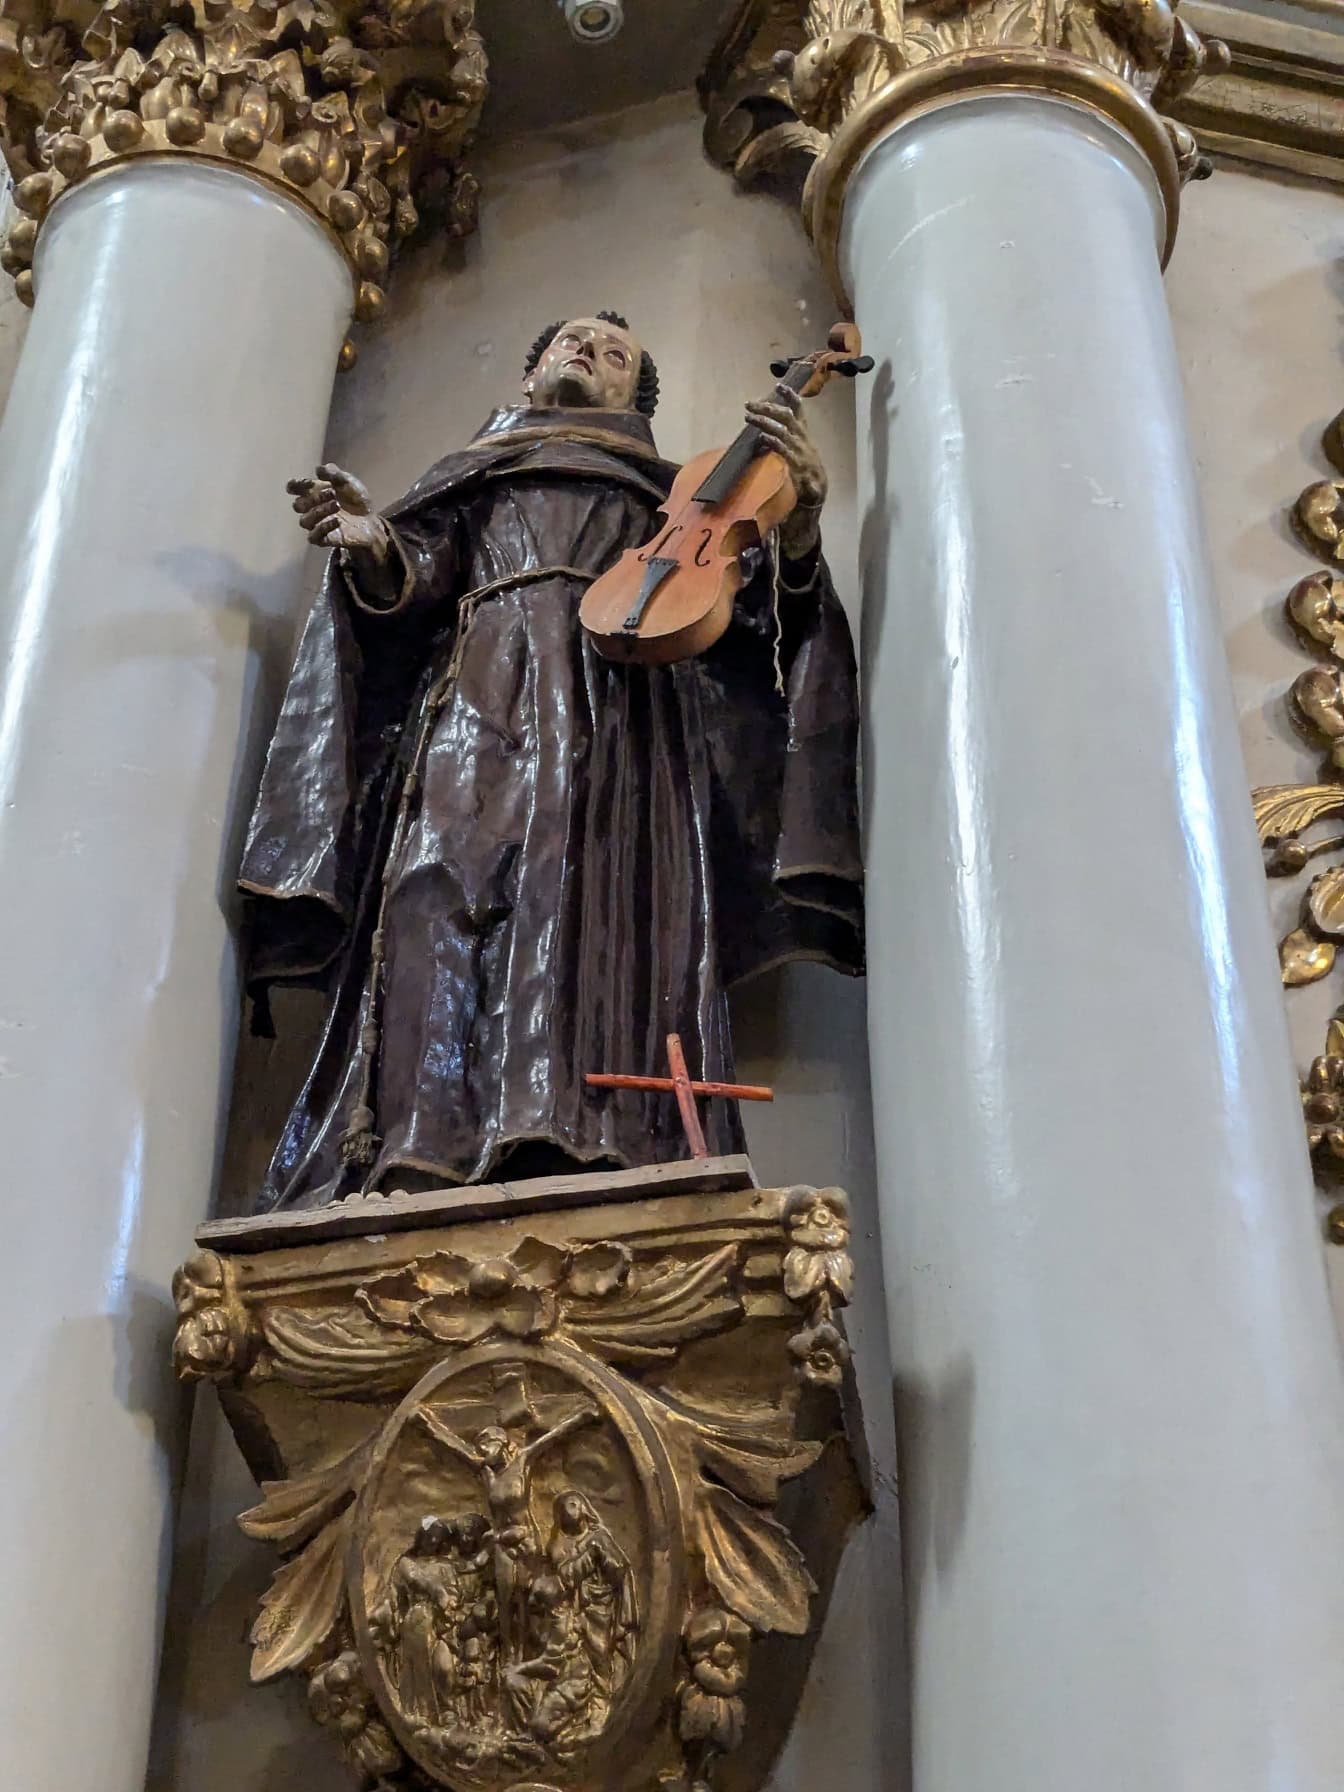 Socha světce držícího housle mezi sloupy v kostele